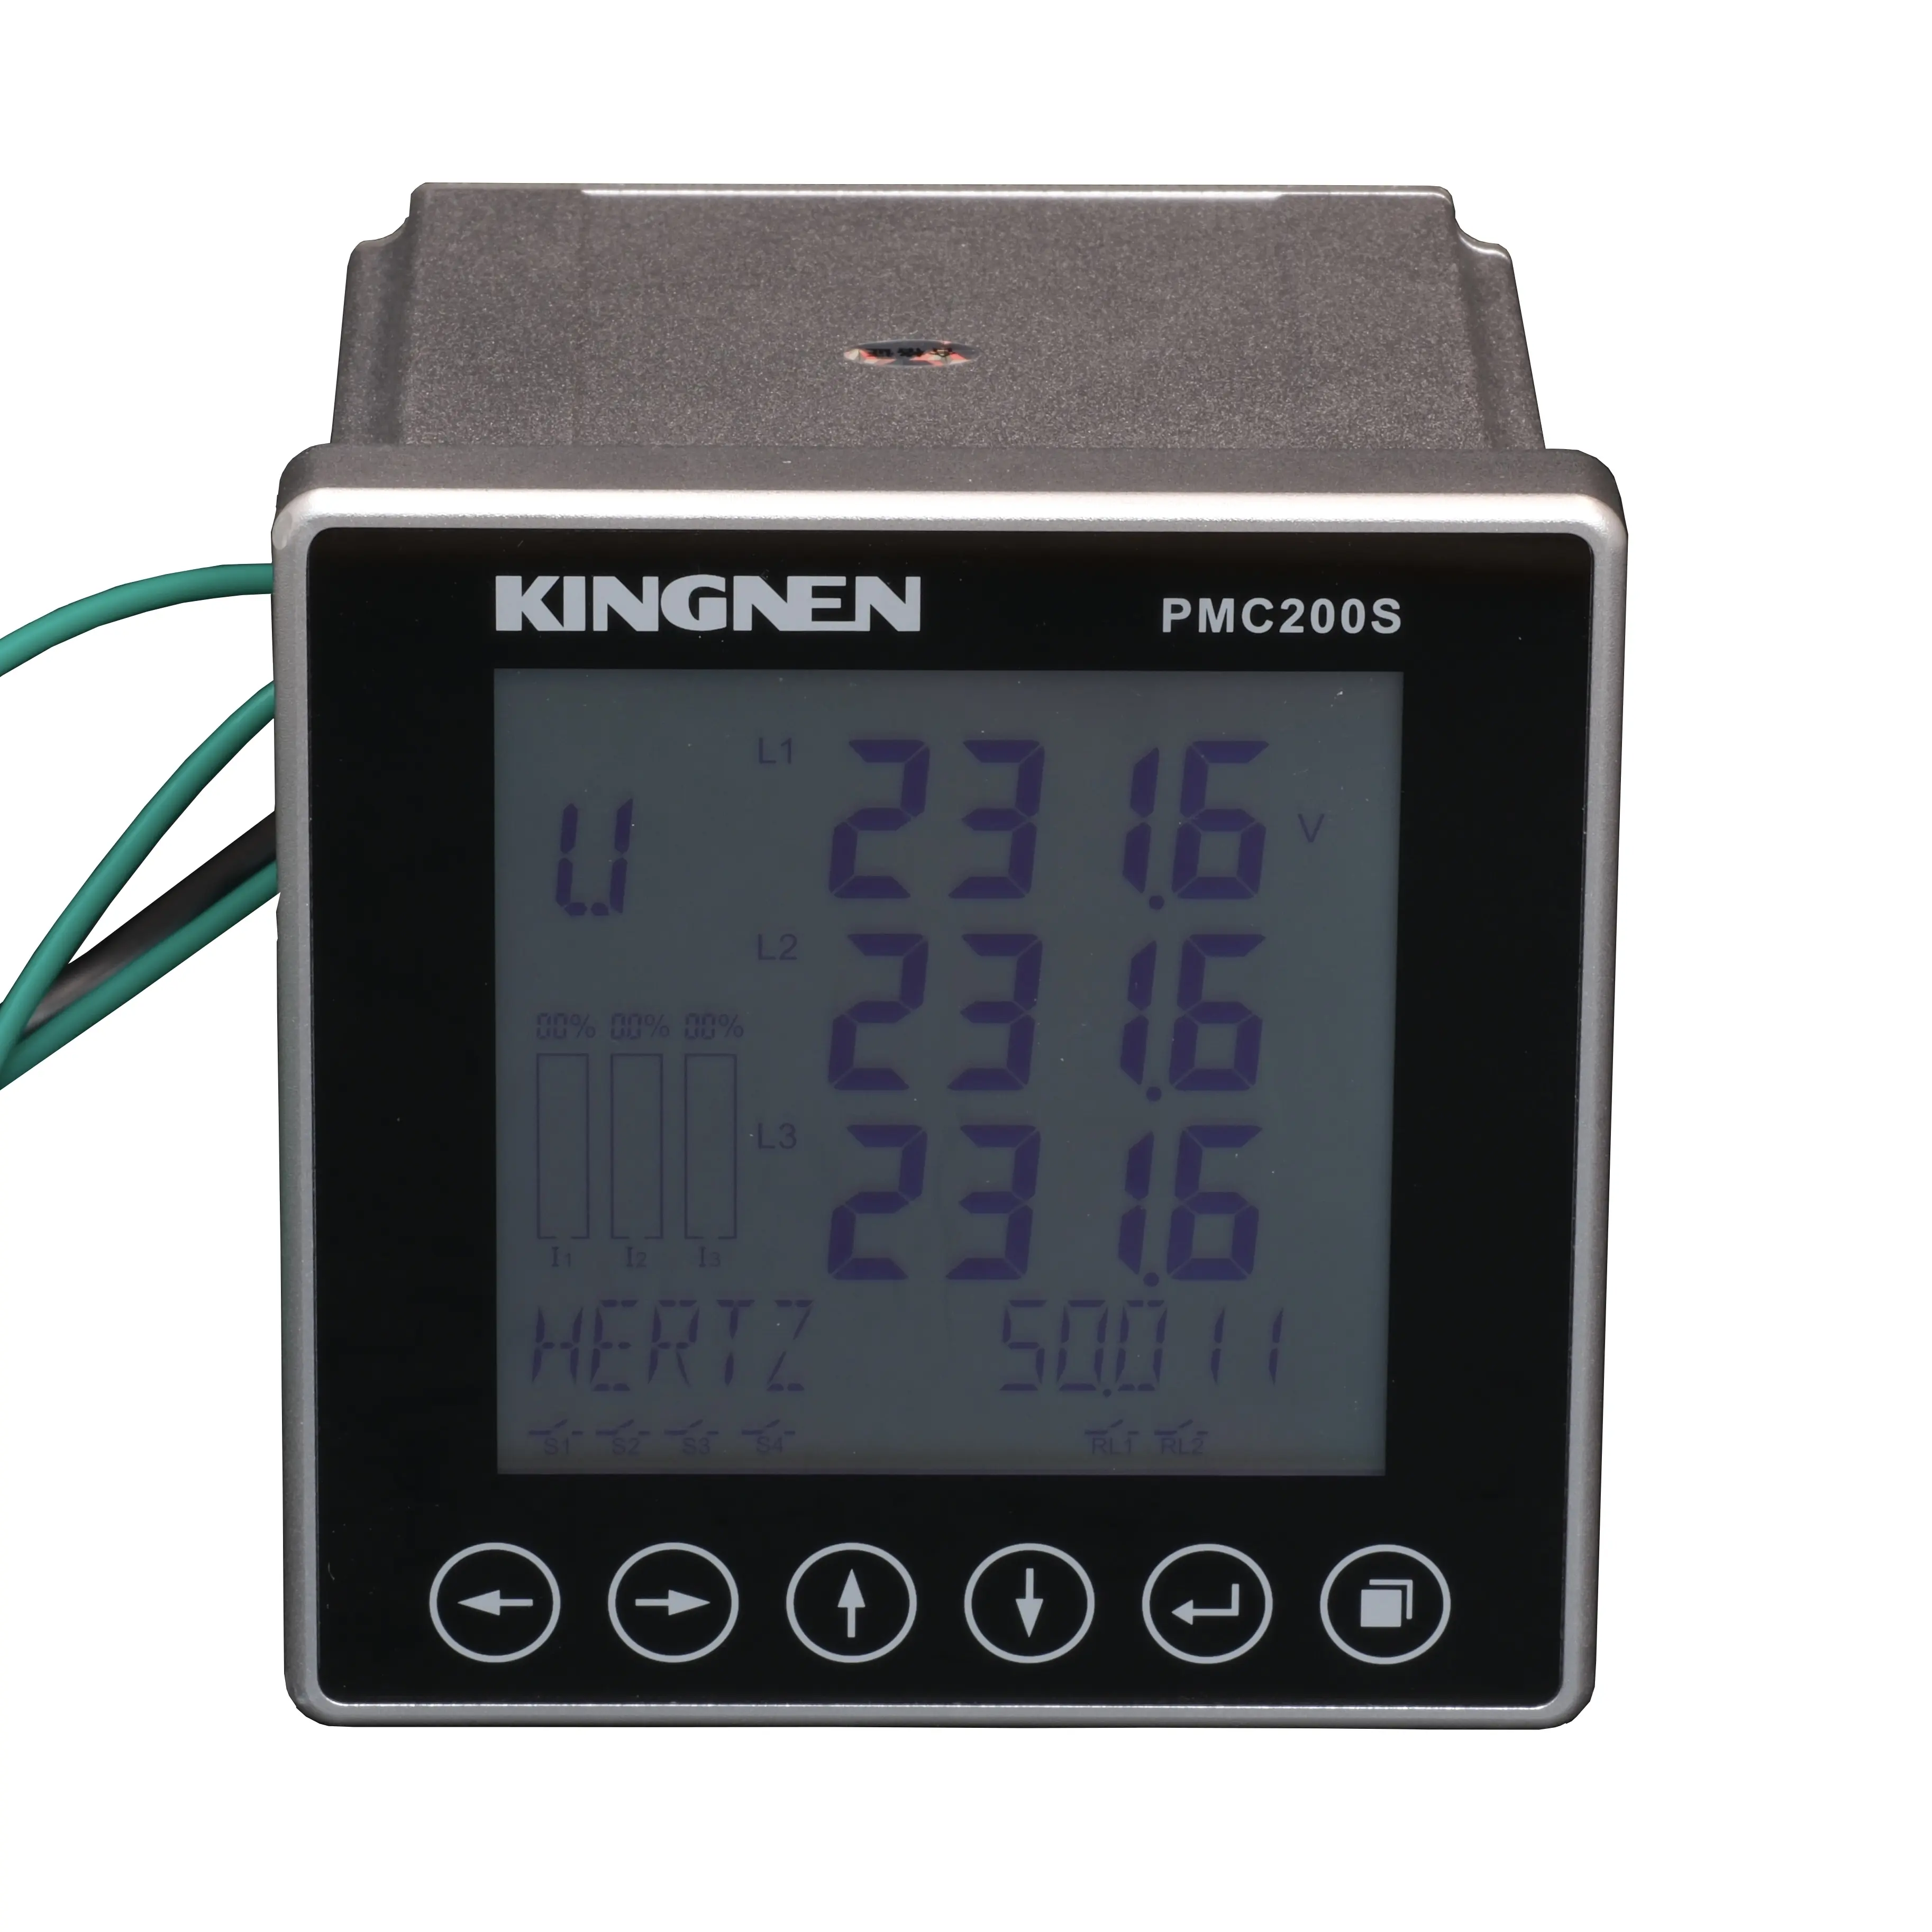 Instrumento de control y medición de parámetros de potencia eléctrica PMC200